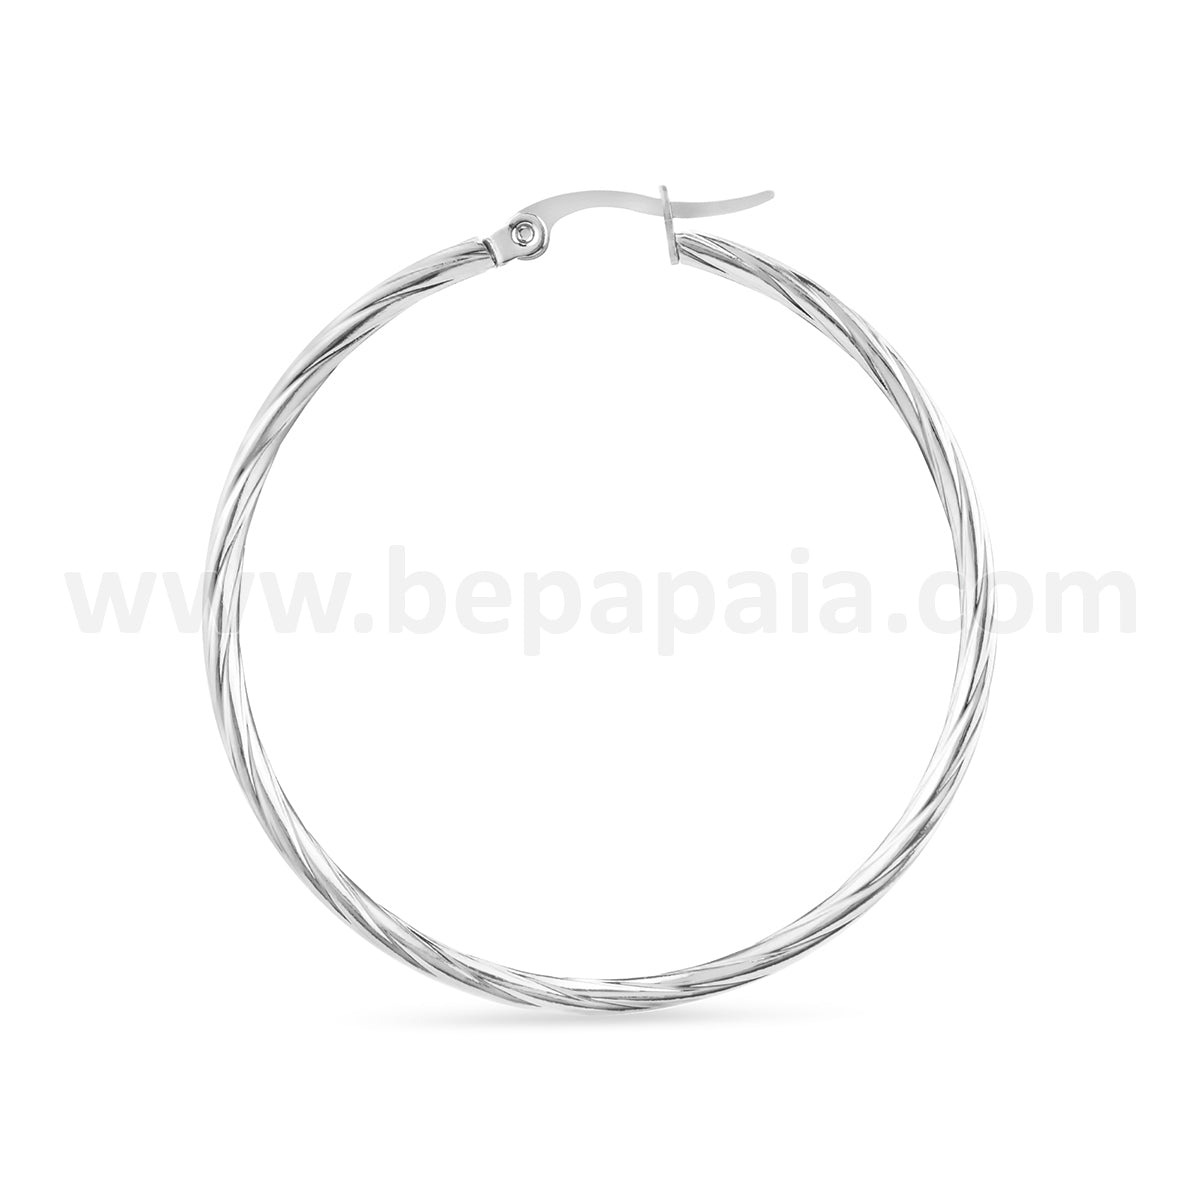 Stainless steel hoop earrings braided 